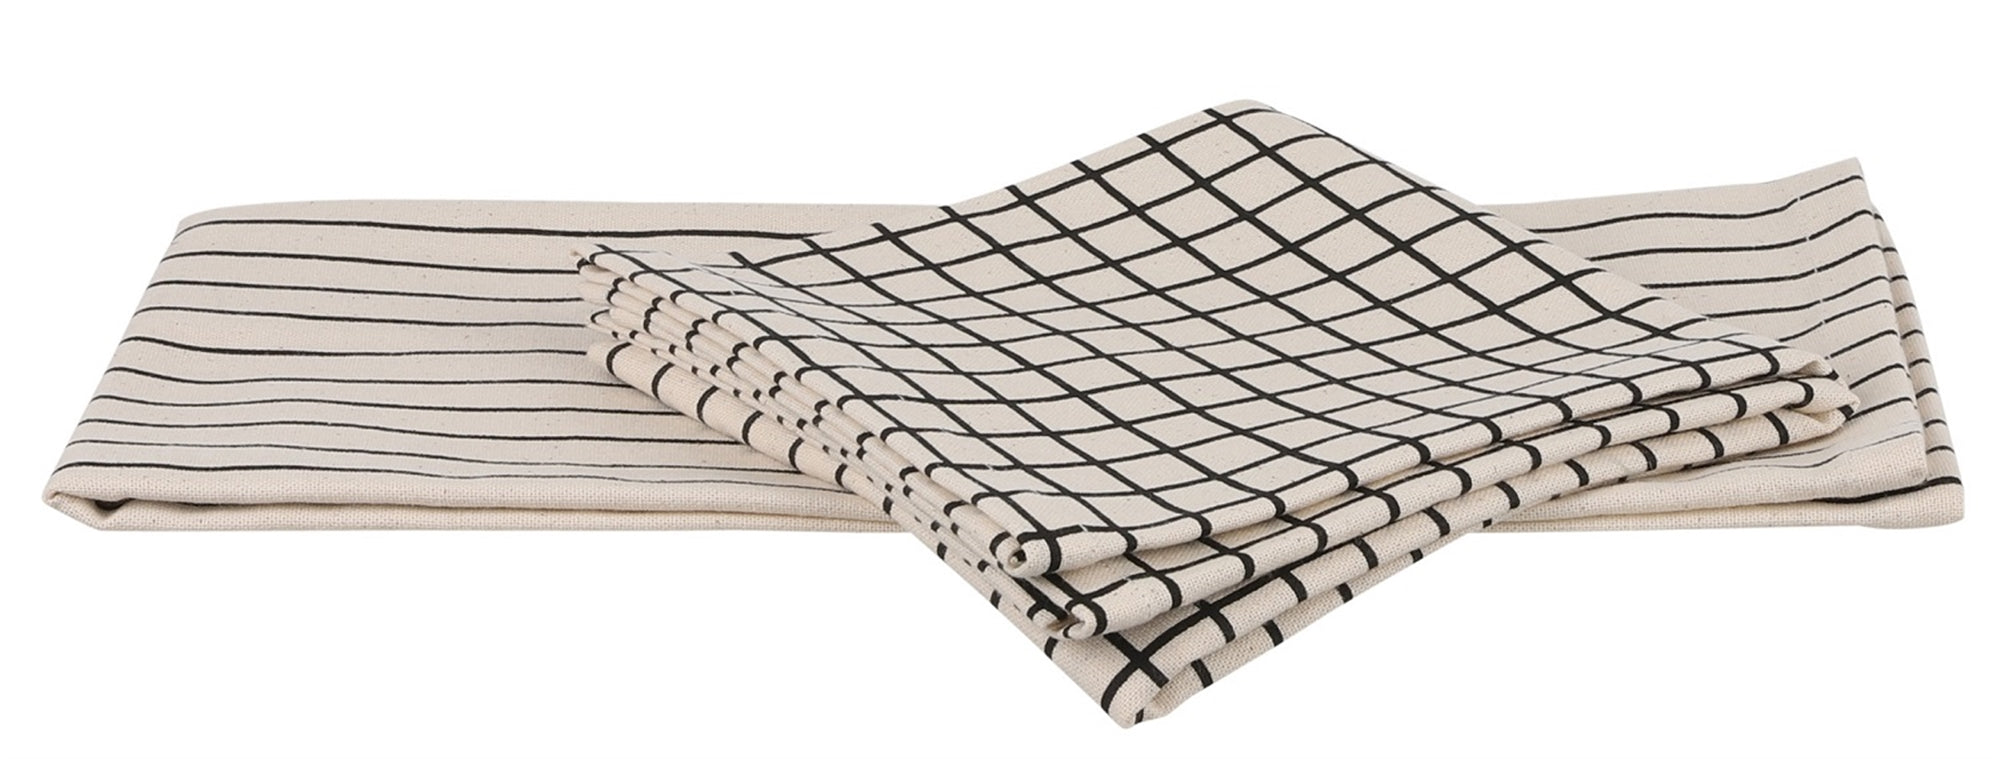 Black & White Colet Tea Towels- Set of 2